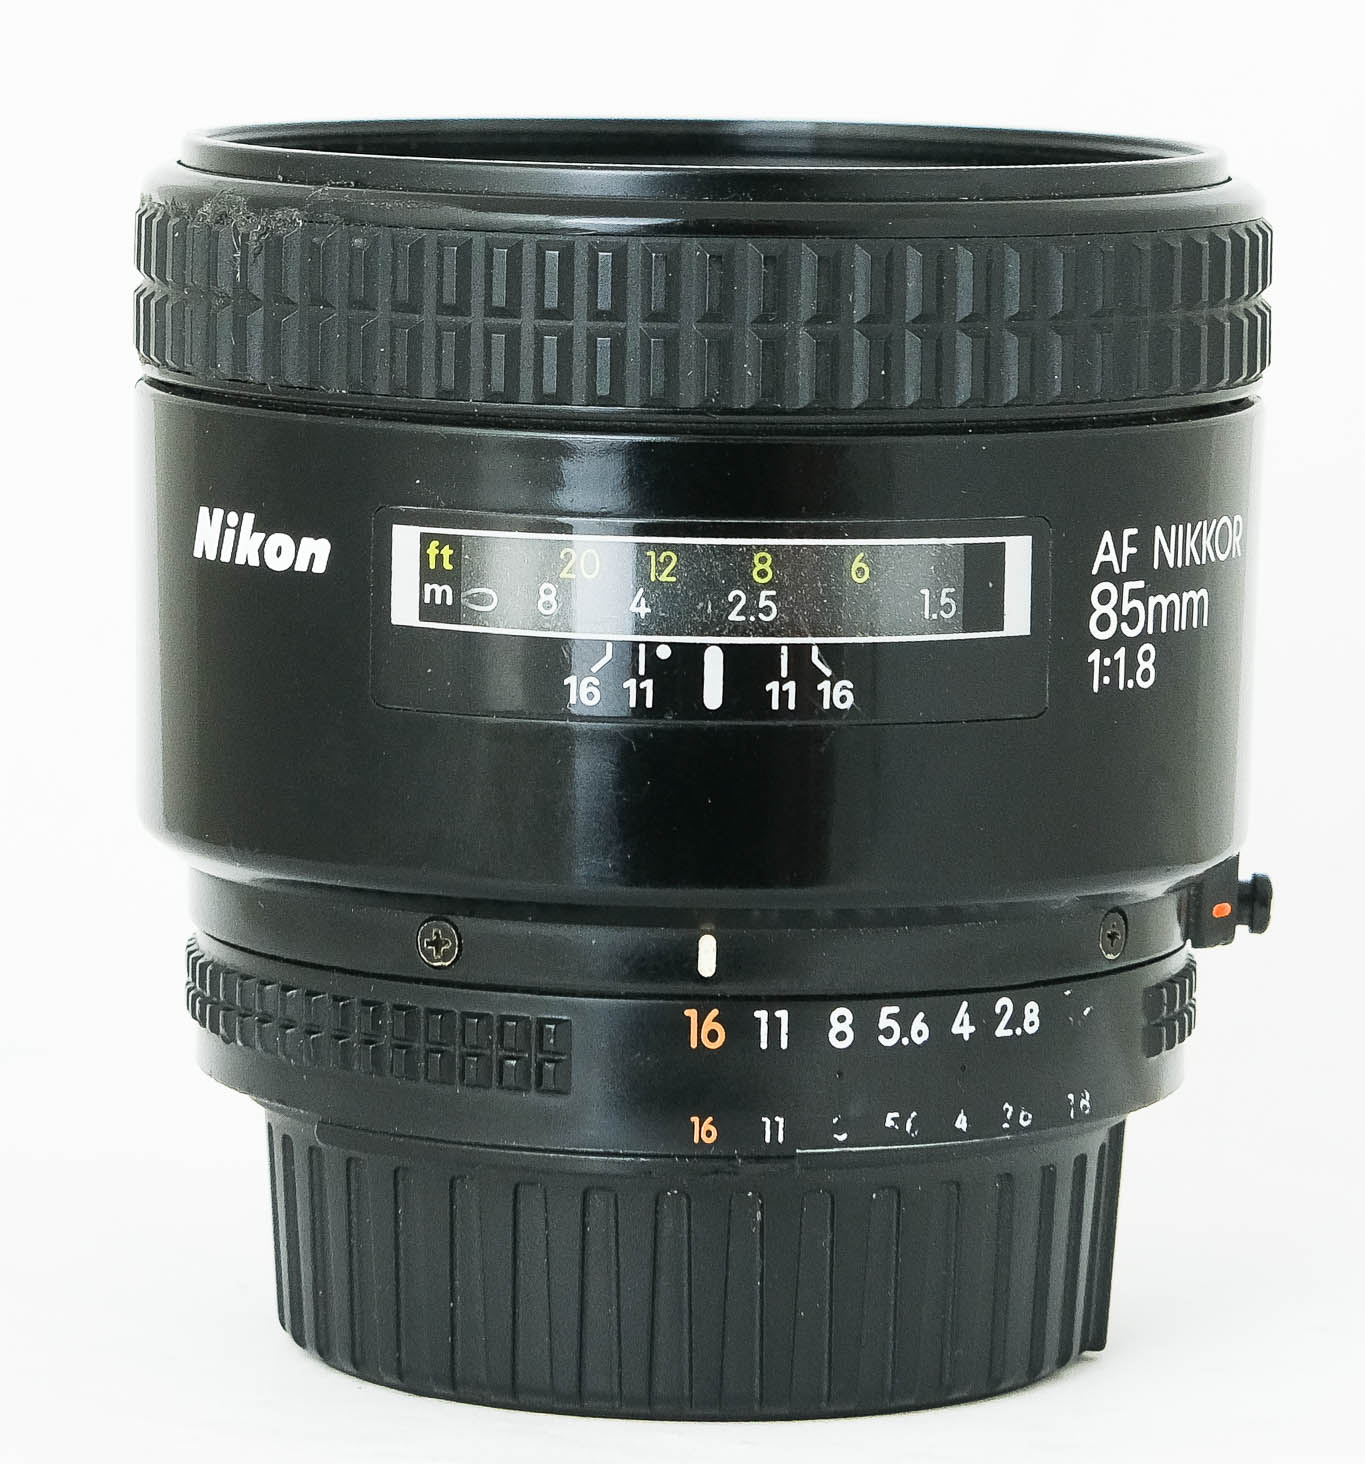 Nikon 85mm f1.8 AF Nikkor